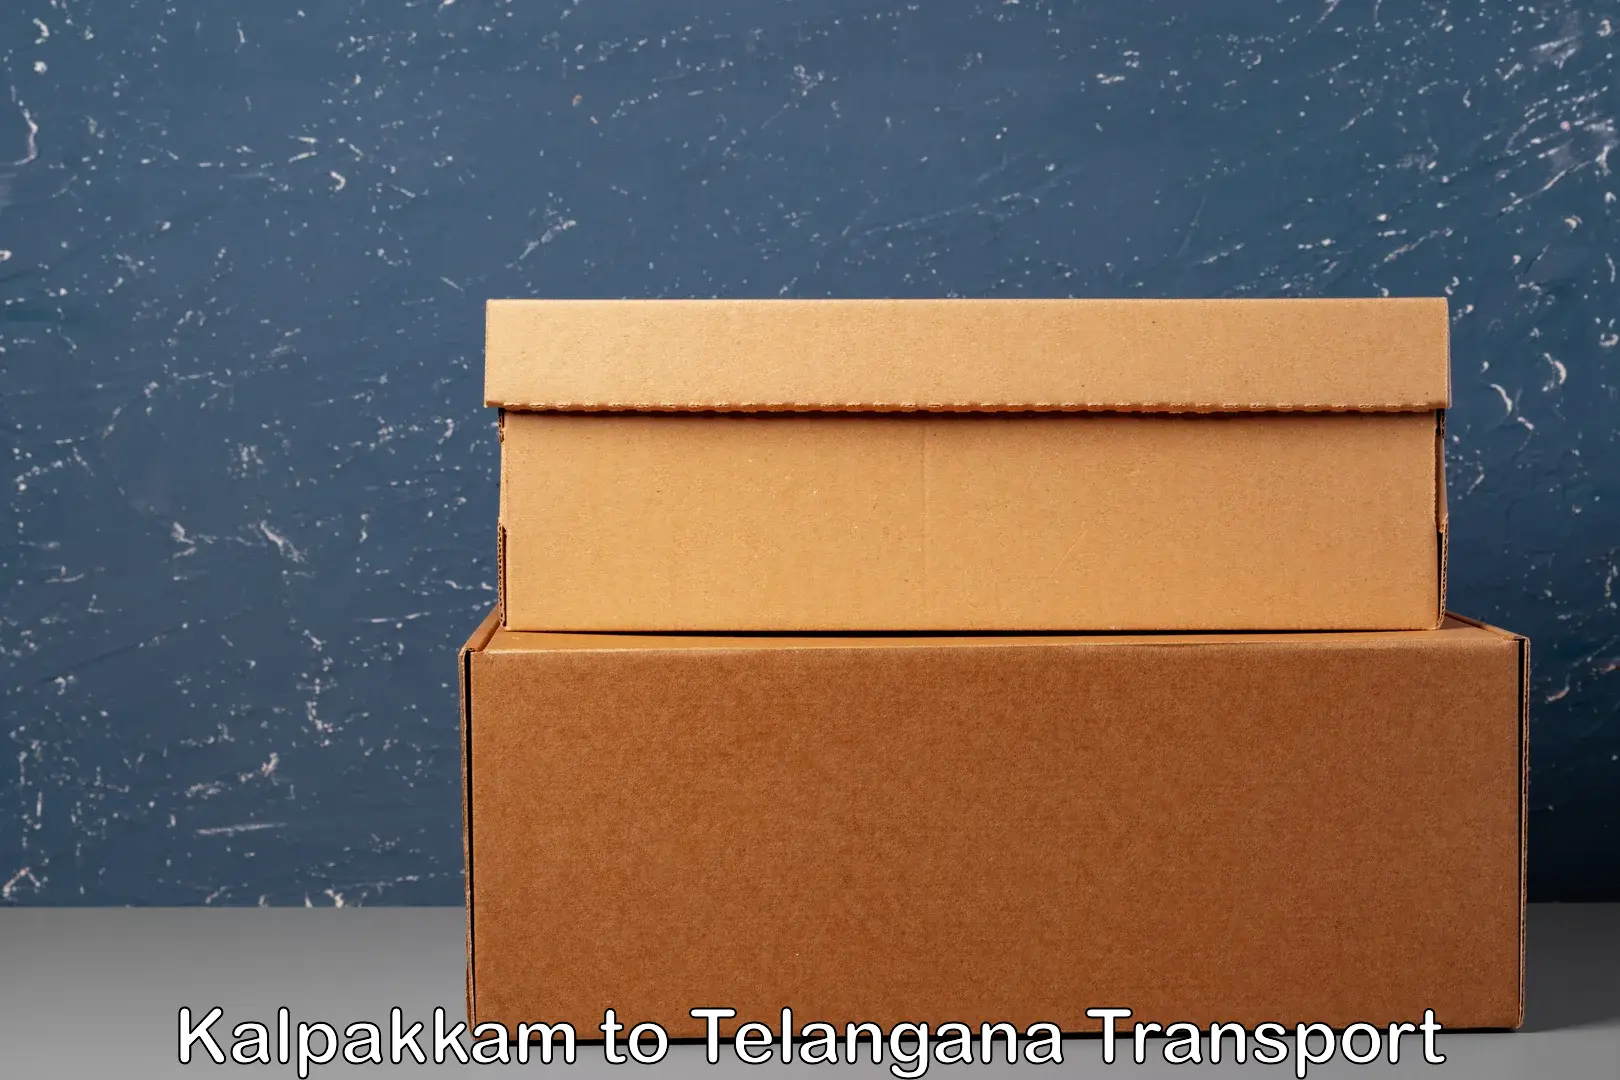 Online transport service Kalpakkam to Telangana